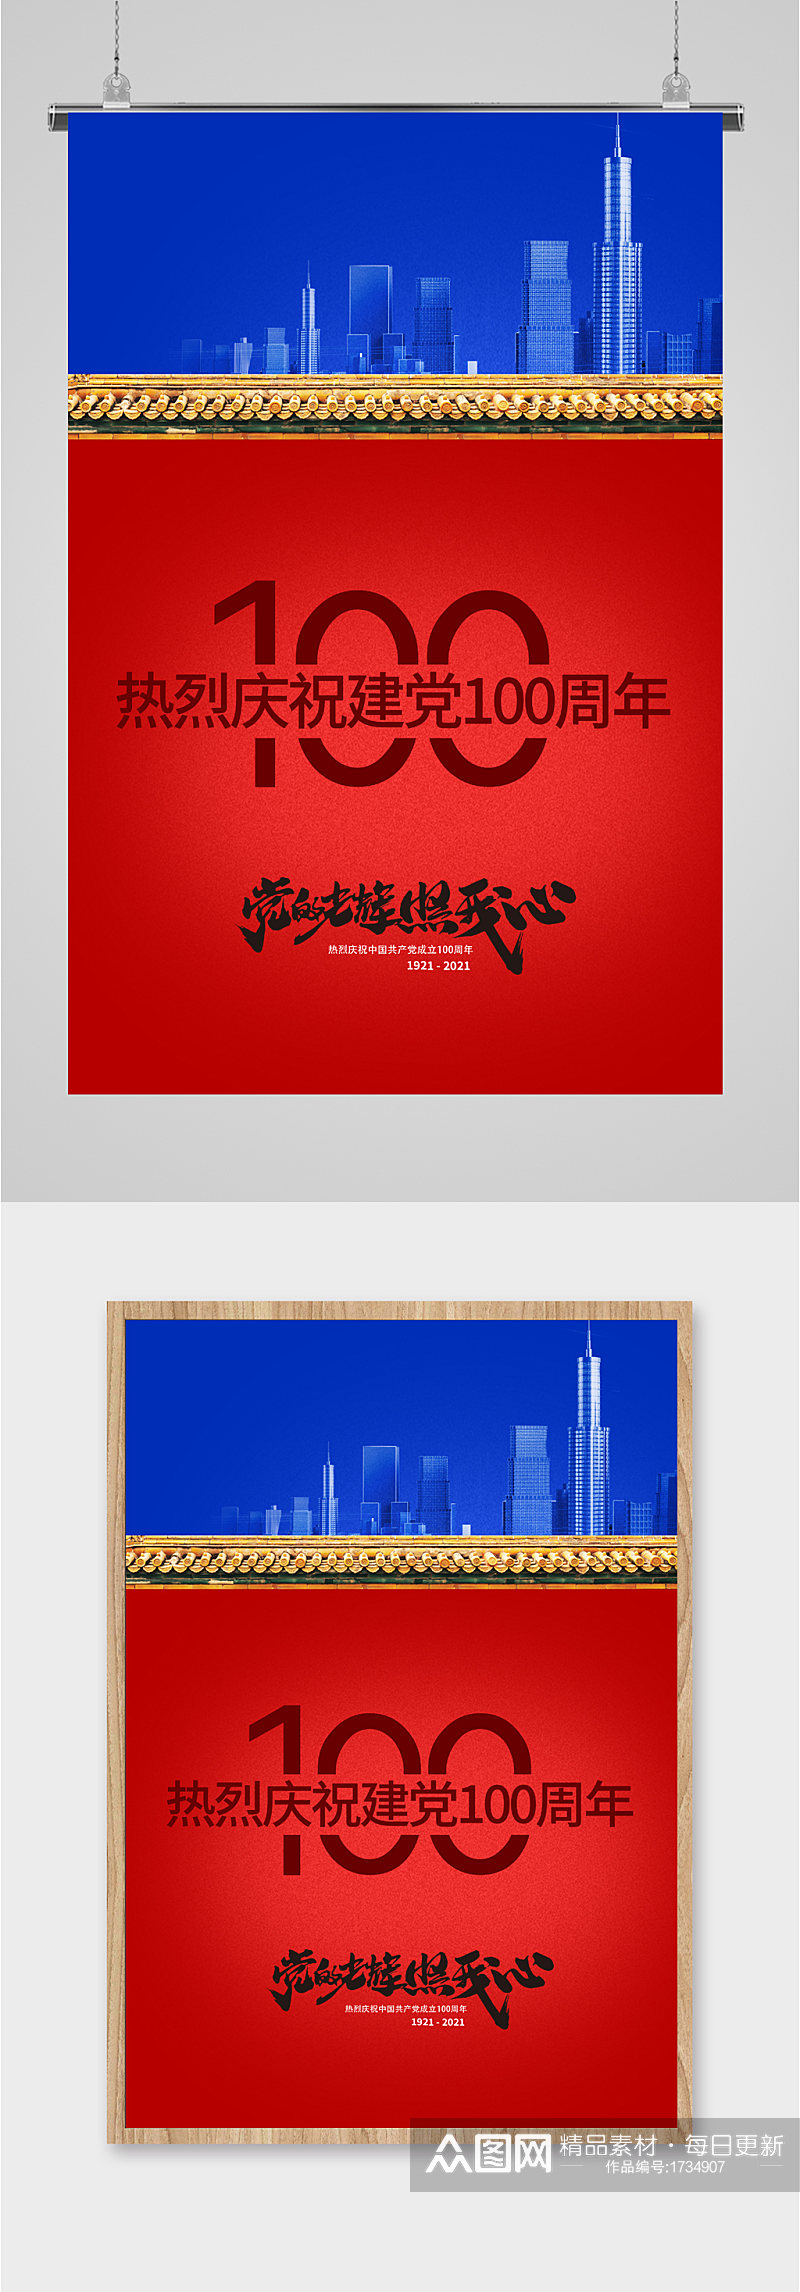 党建100周年红蓝双拼海报素材